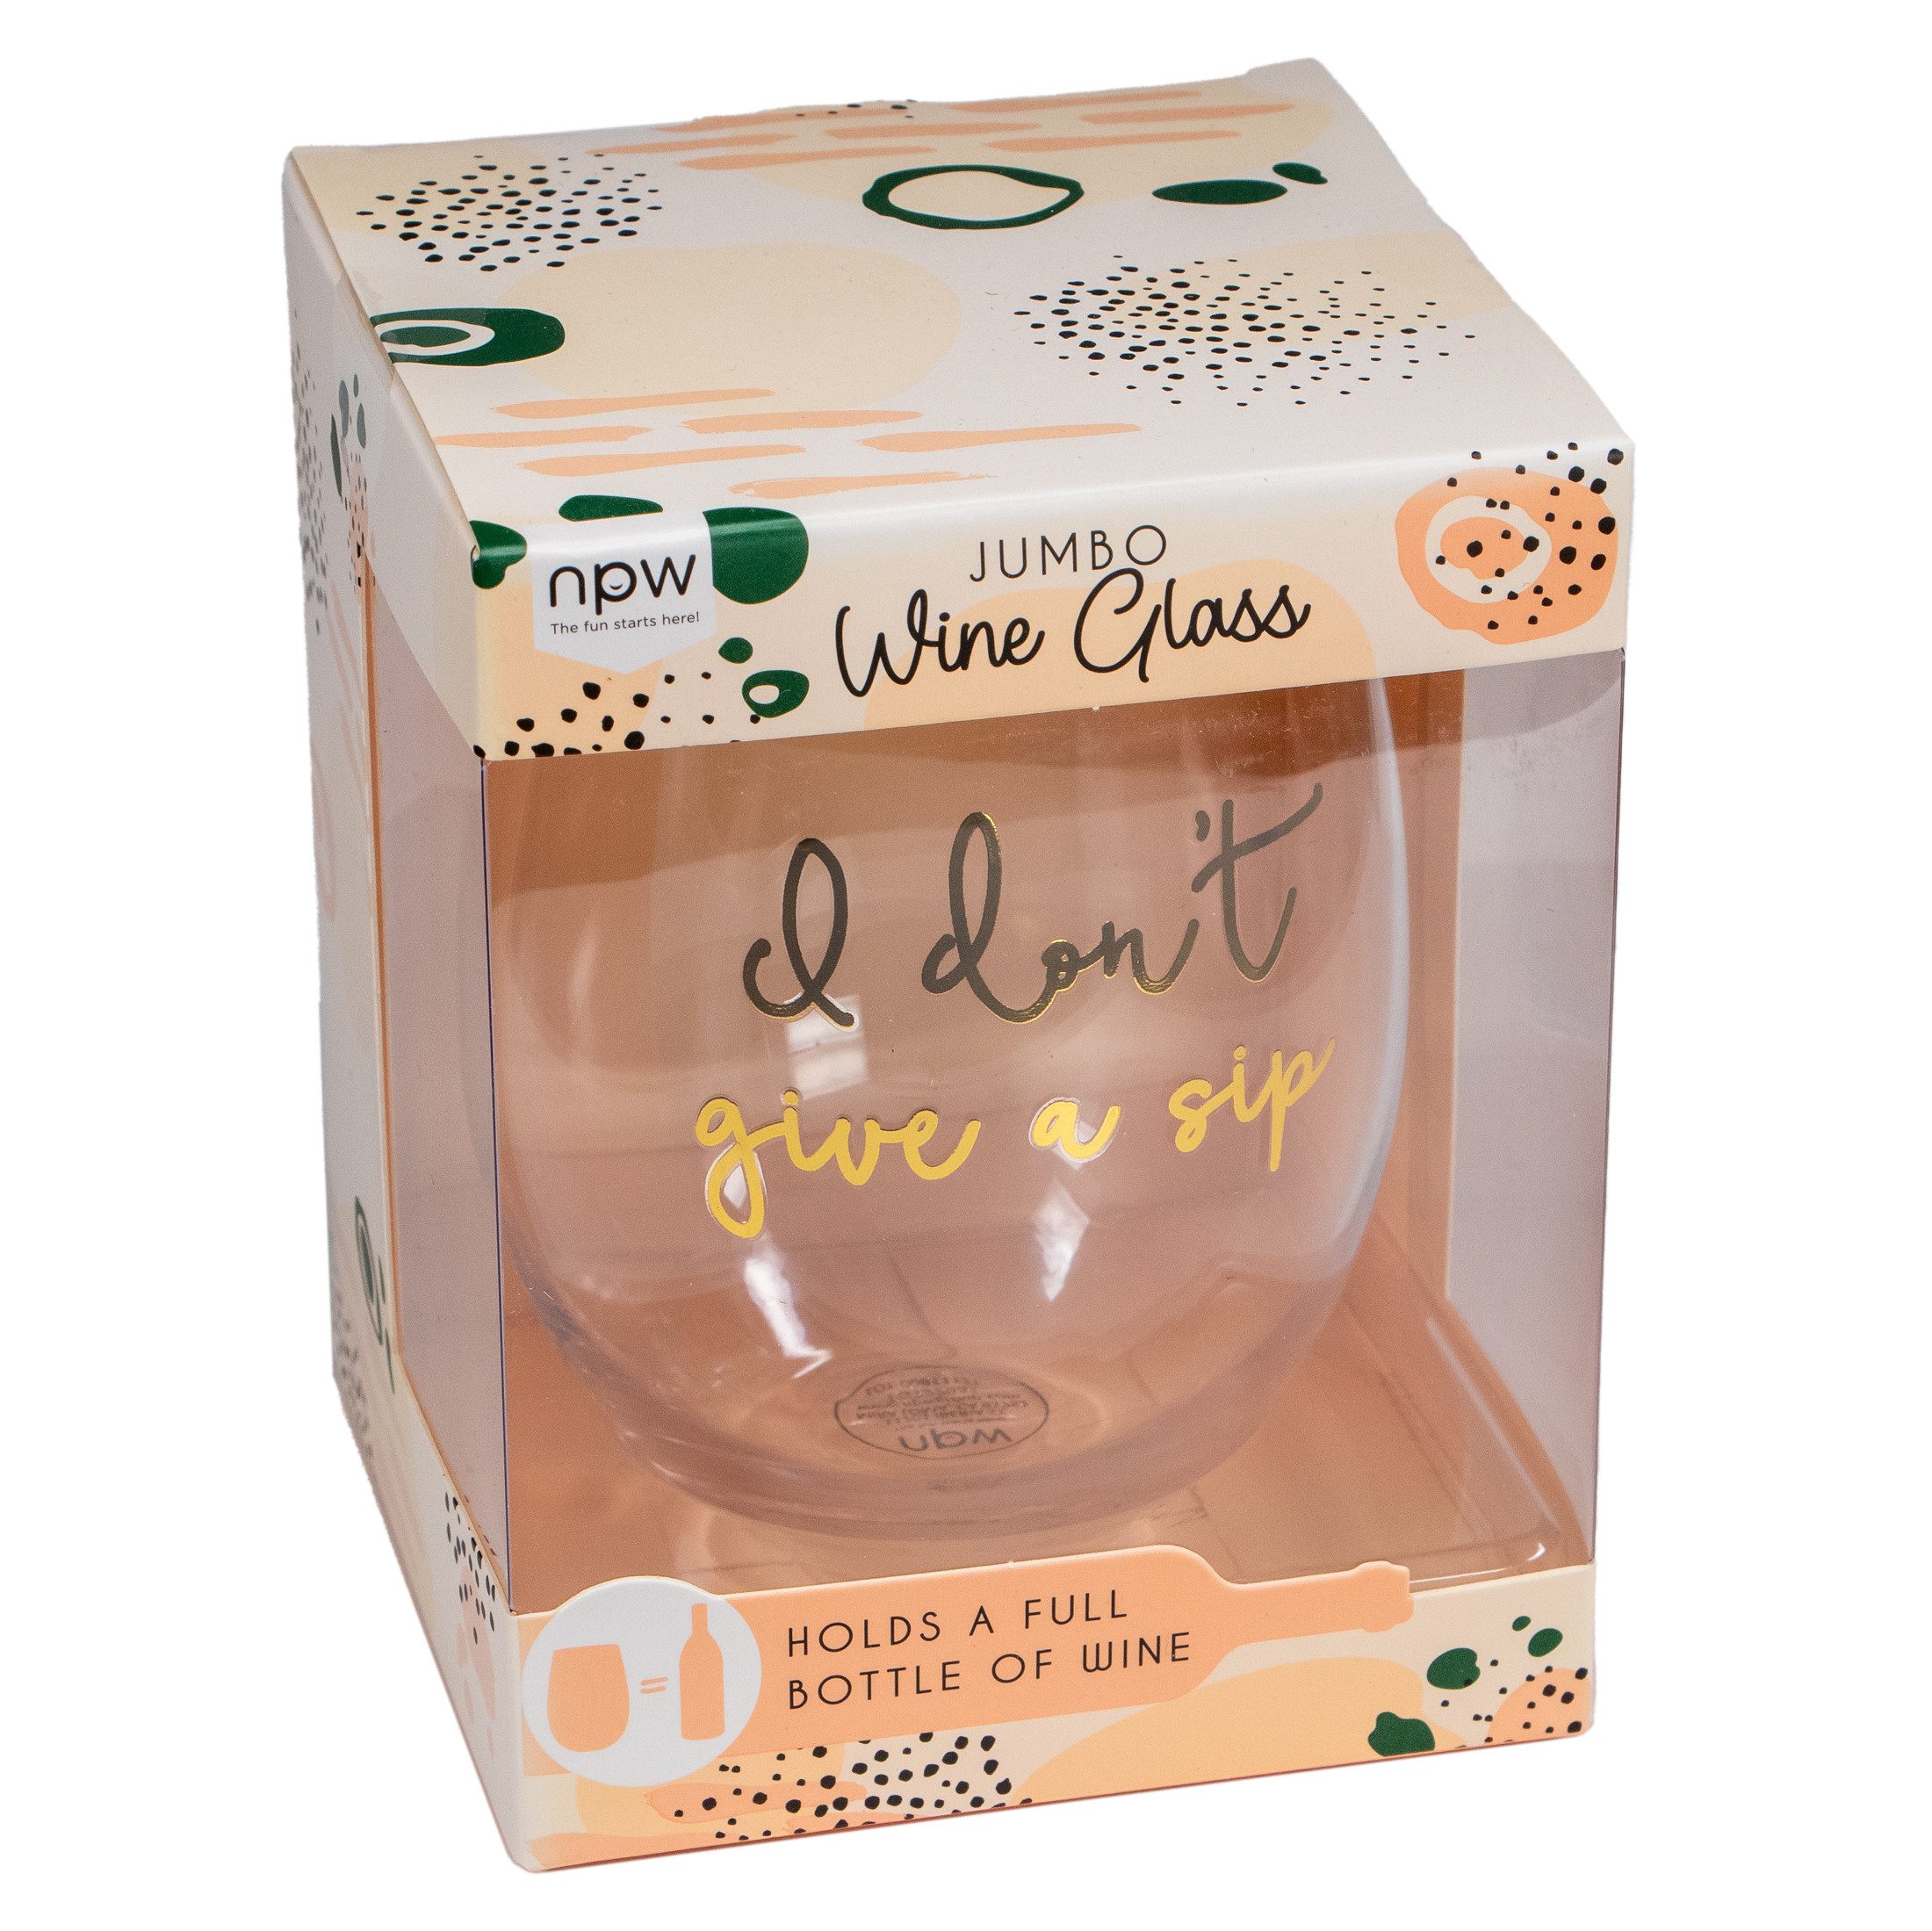 Weinglas Riesiges Weinglas Jumboglas - ich gebe keinen Schluck, Glas, 780ml Fassungsvermögen